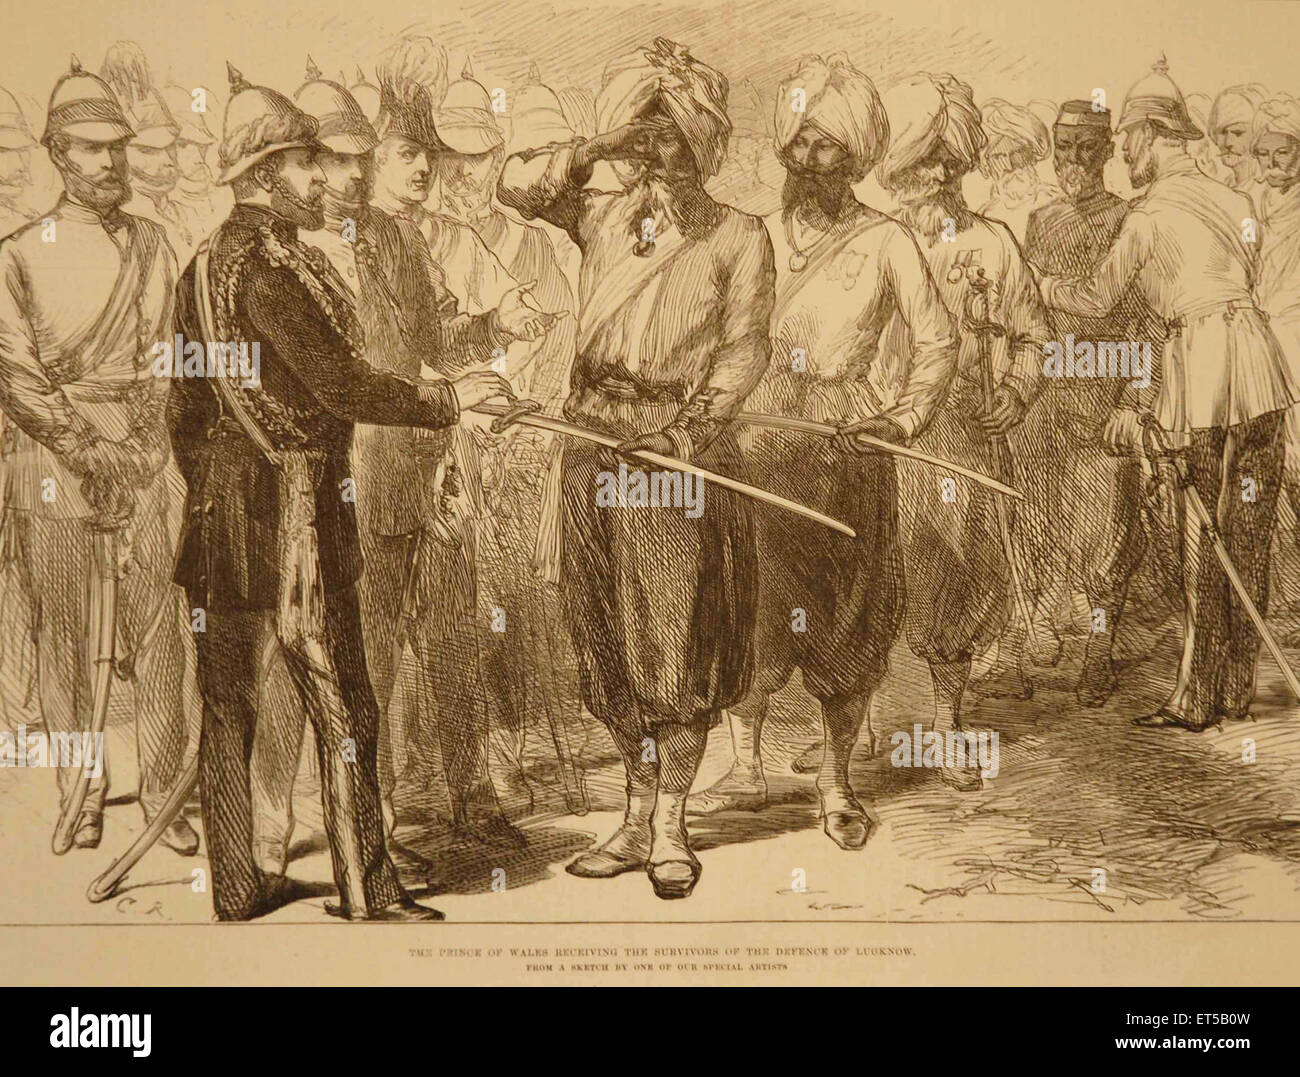 Königliche Tour, Royalty on Tour, Prince of Wales, Treffen mit Überlebenden der Verteidigung von Lucknow; Uttar Pradesh; Indien; alte Vintage-Gravur aus dem 19. Jahrhundert Stockfoto